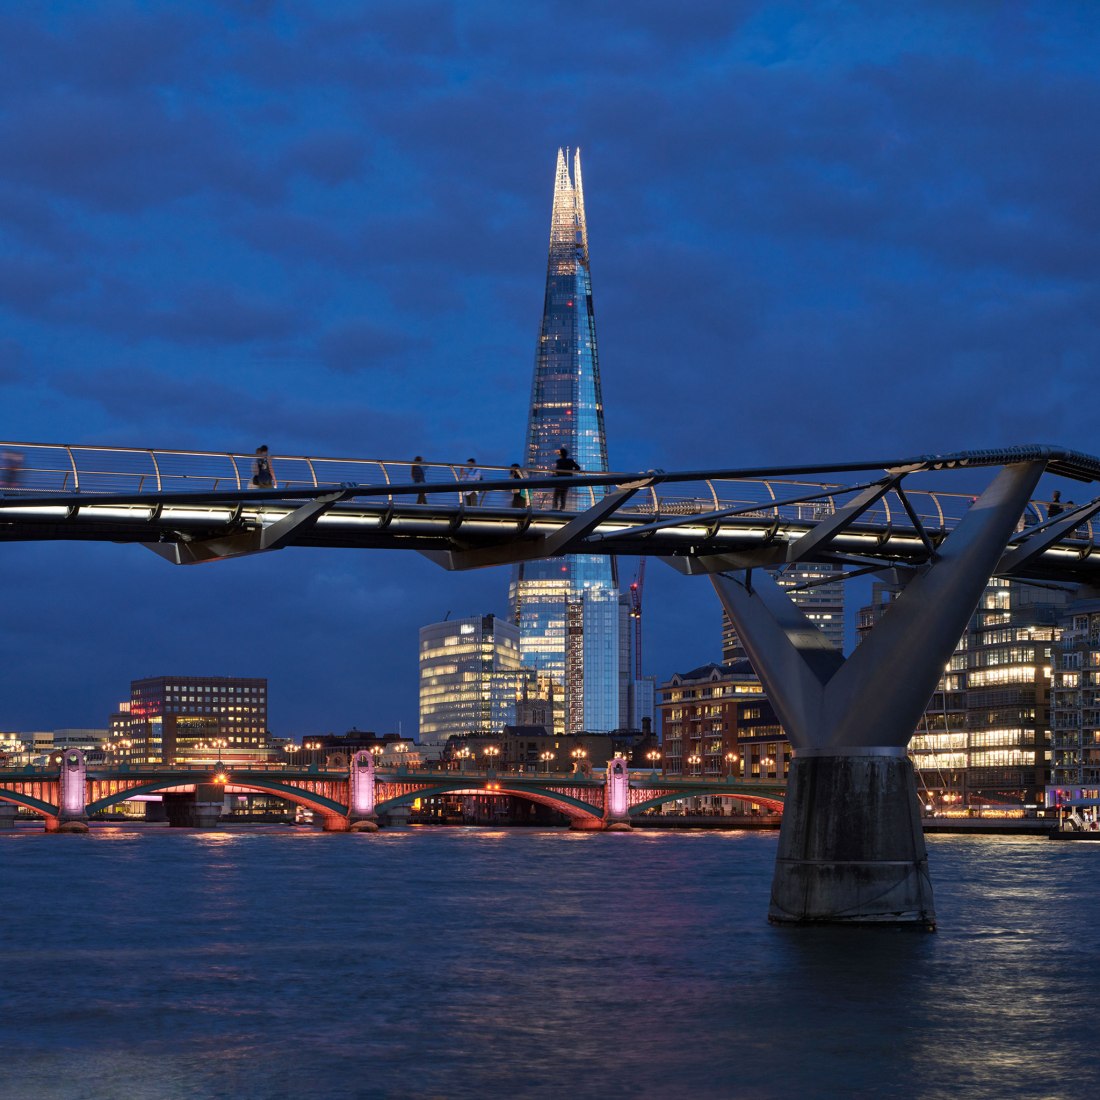 Illuminated River. Millennium Bridge. ©James Newton.